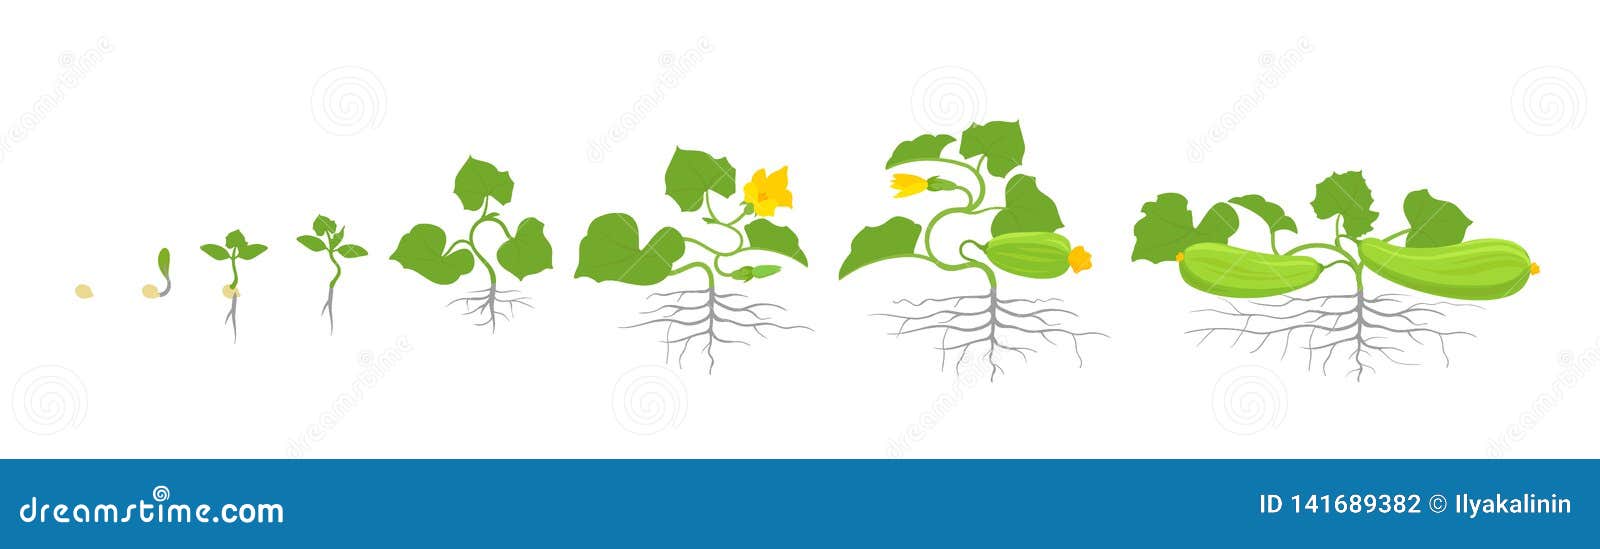 Sự phát triển của zucchini: Zucchini nhanh như thế nào?